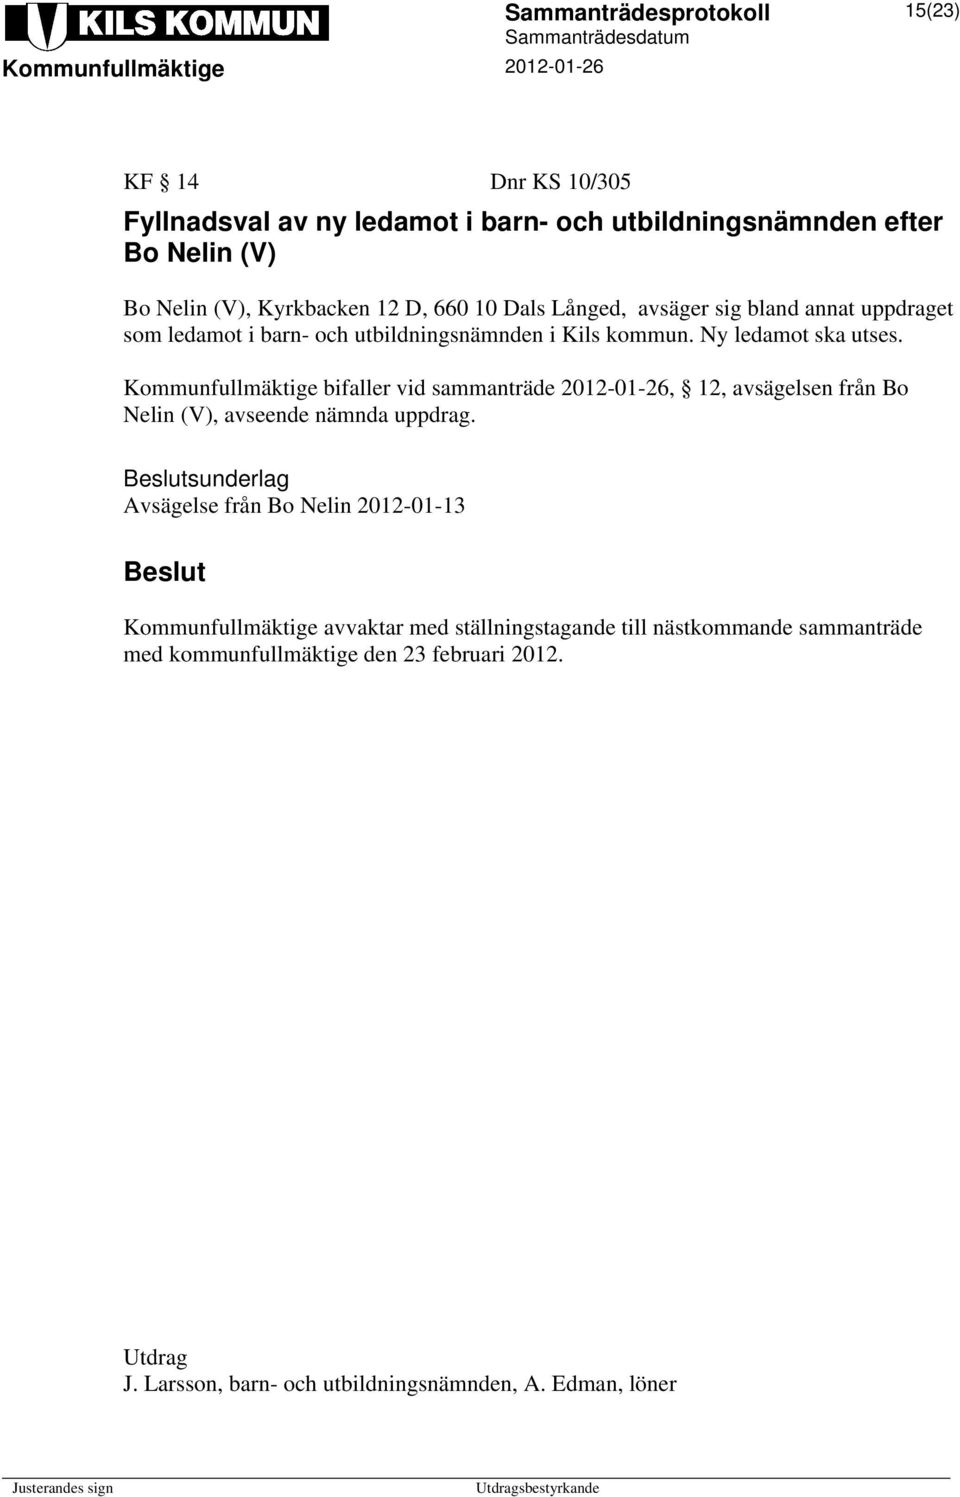 Kommunfullmäktige bifaller vid sammanträde 2012-01-26, 12, avsägelsen från Bo Nelin (V), avseende nämnda uppdrag.